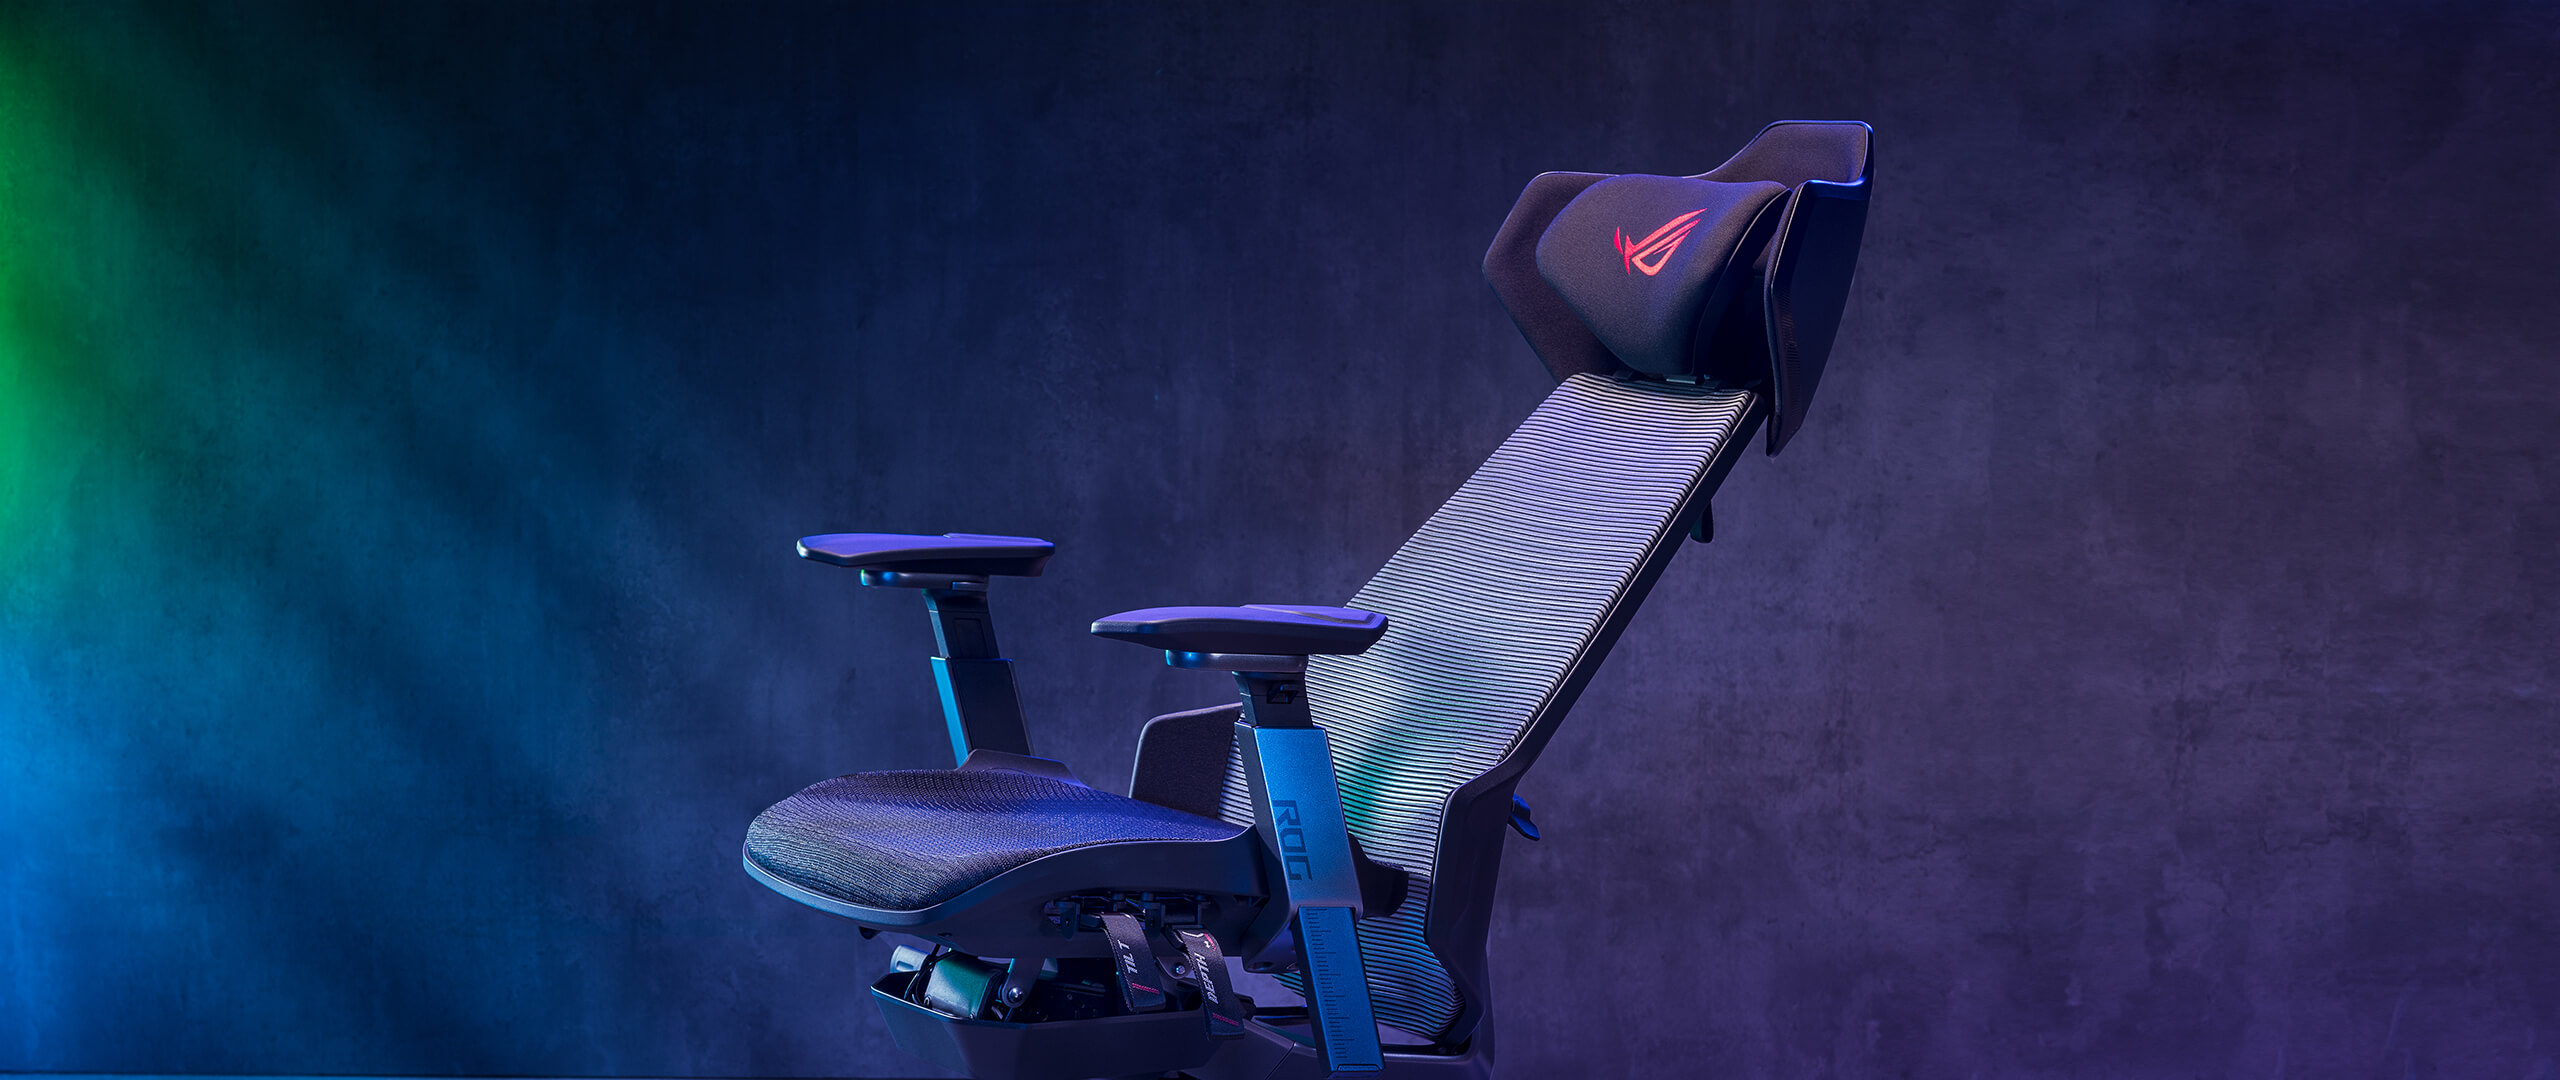 ROG Destrier Ergo 電競椅椅背傾斜至特定角度的側視圖